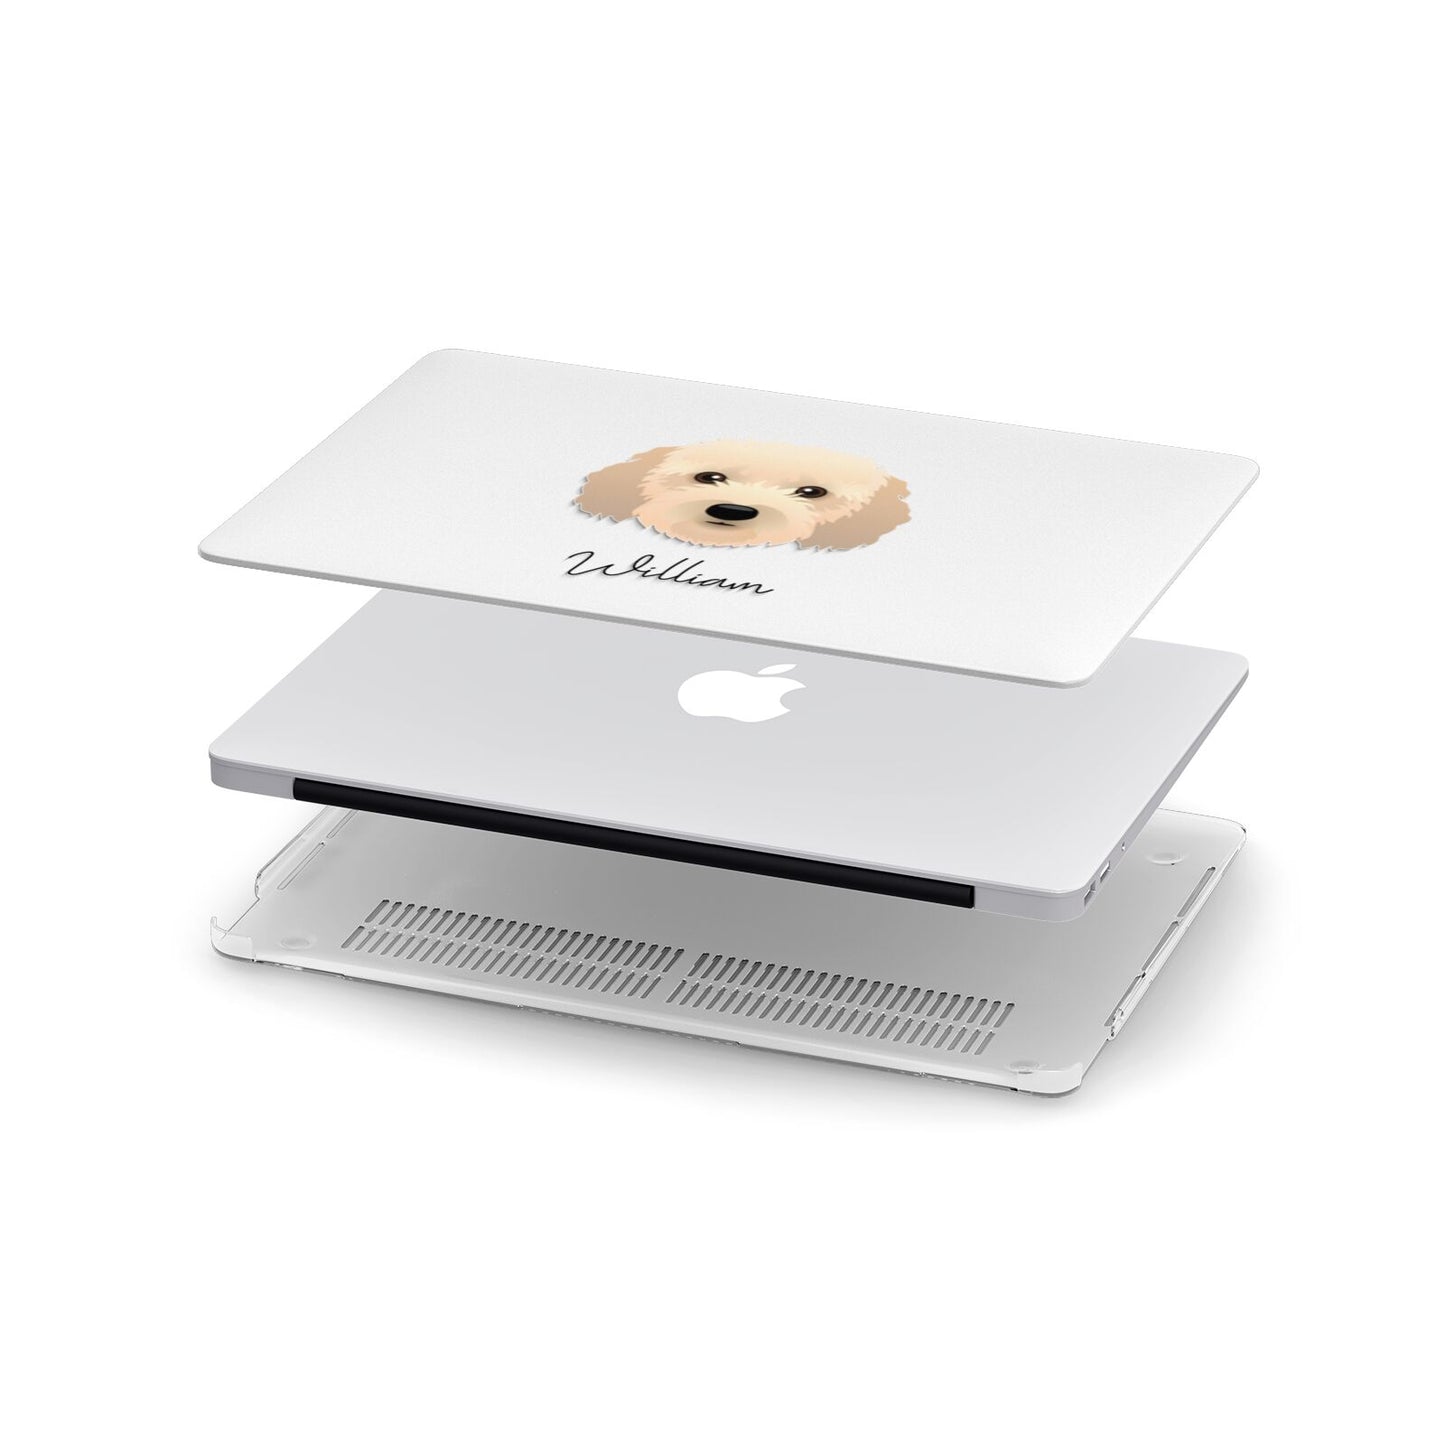 Cockapoo Personalised Apple MacBook Case in Detail